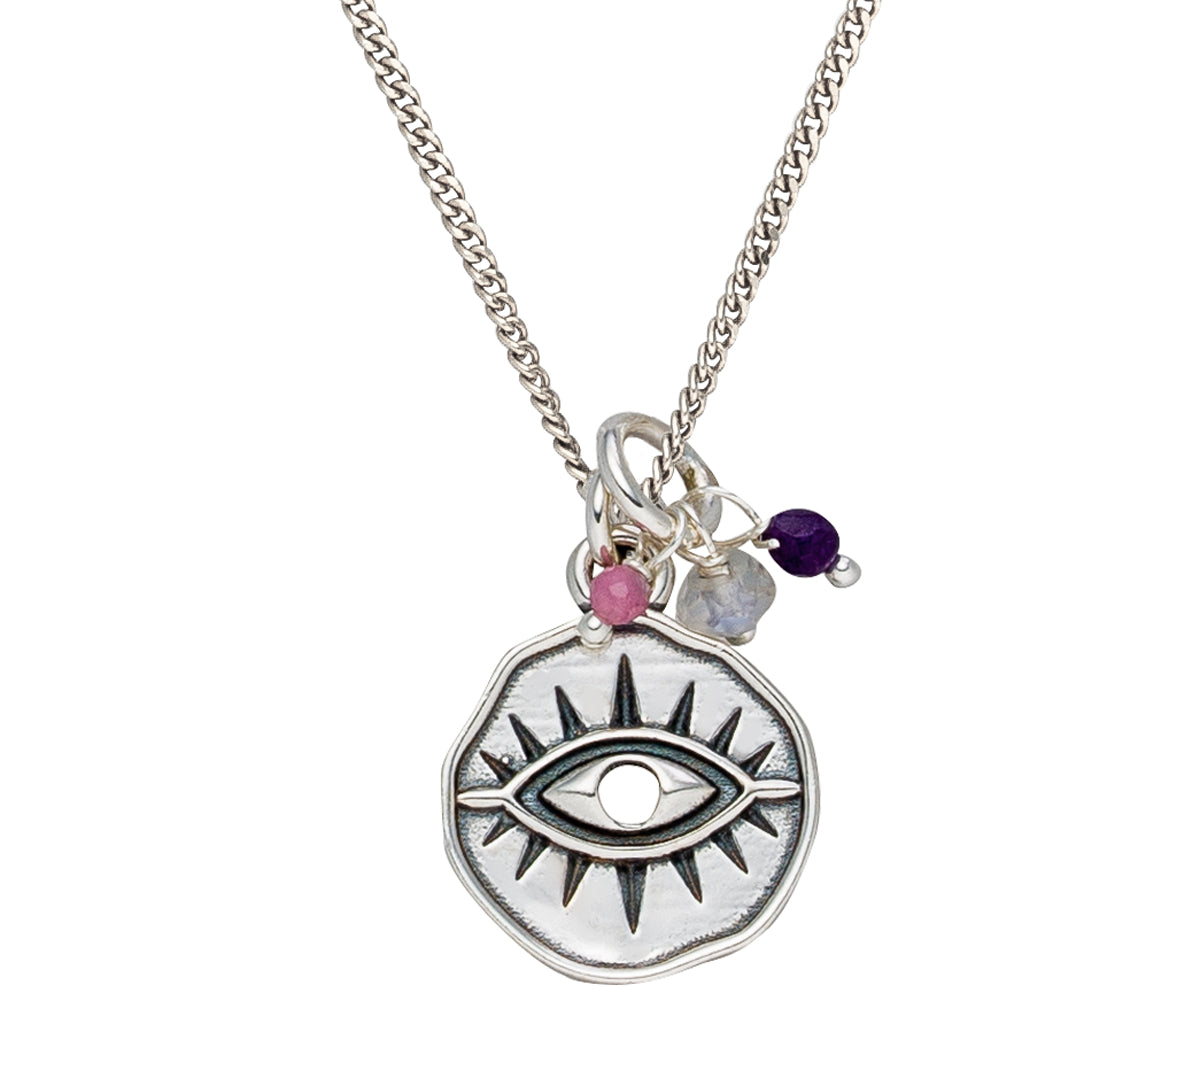 Kette Auge aus 925 Silber mit Auge Amulett als Schutzanhänger und Edelsteinen. 45 cm lang.